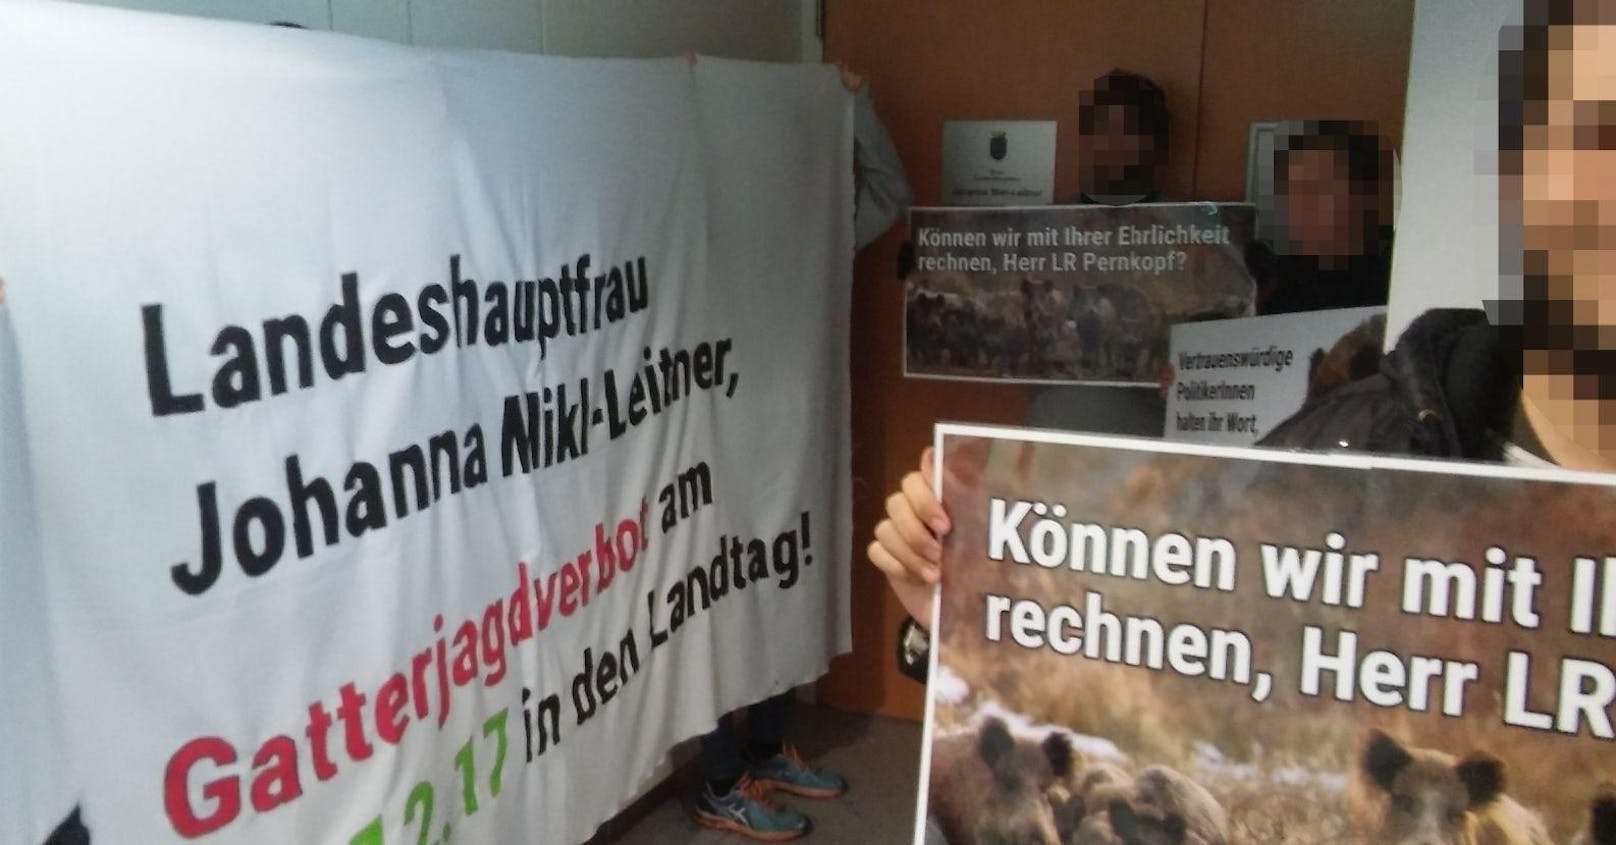 Auf riesigen Plakaten war die Botschaft deutlich zu erkennen: Schluss mit Gatterjagd in Niederösterreich.